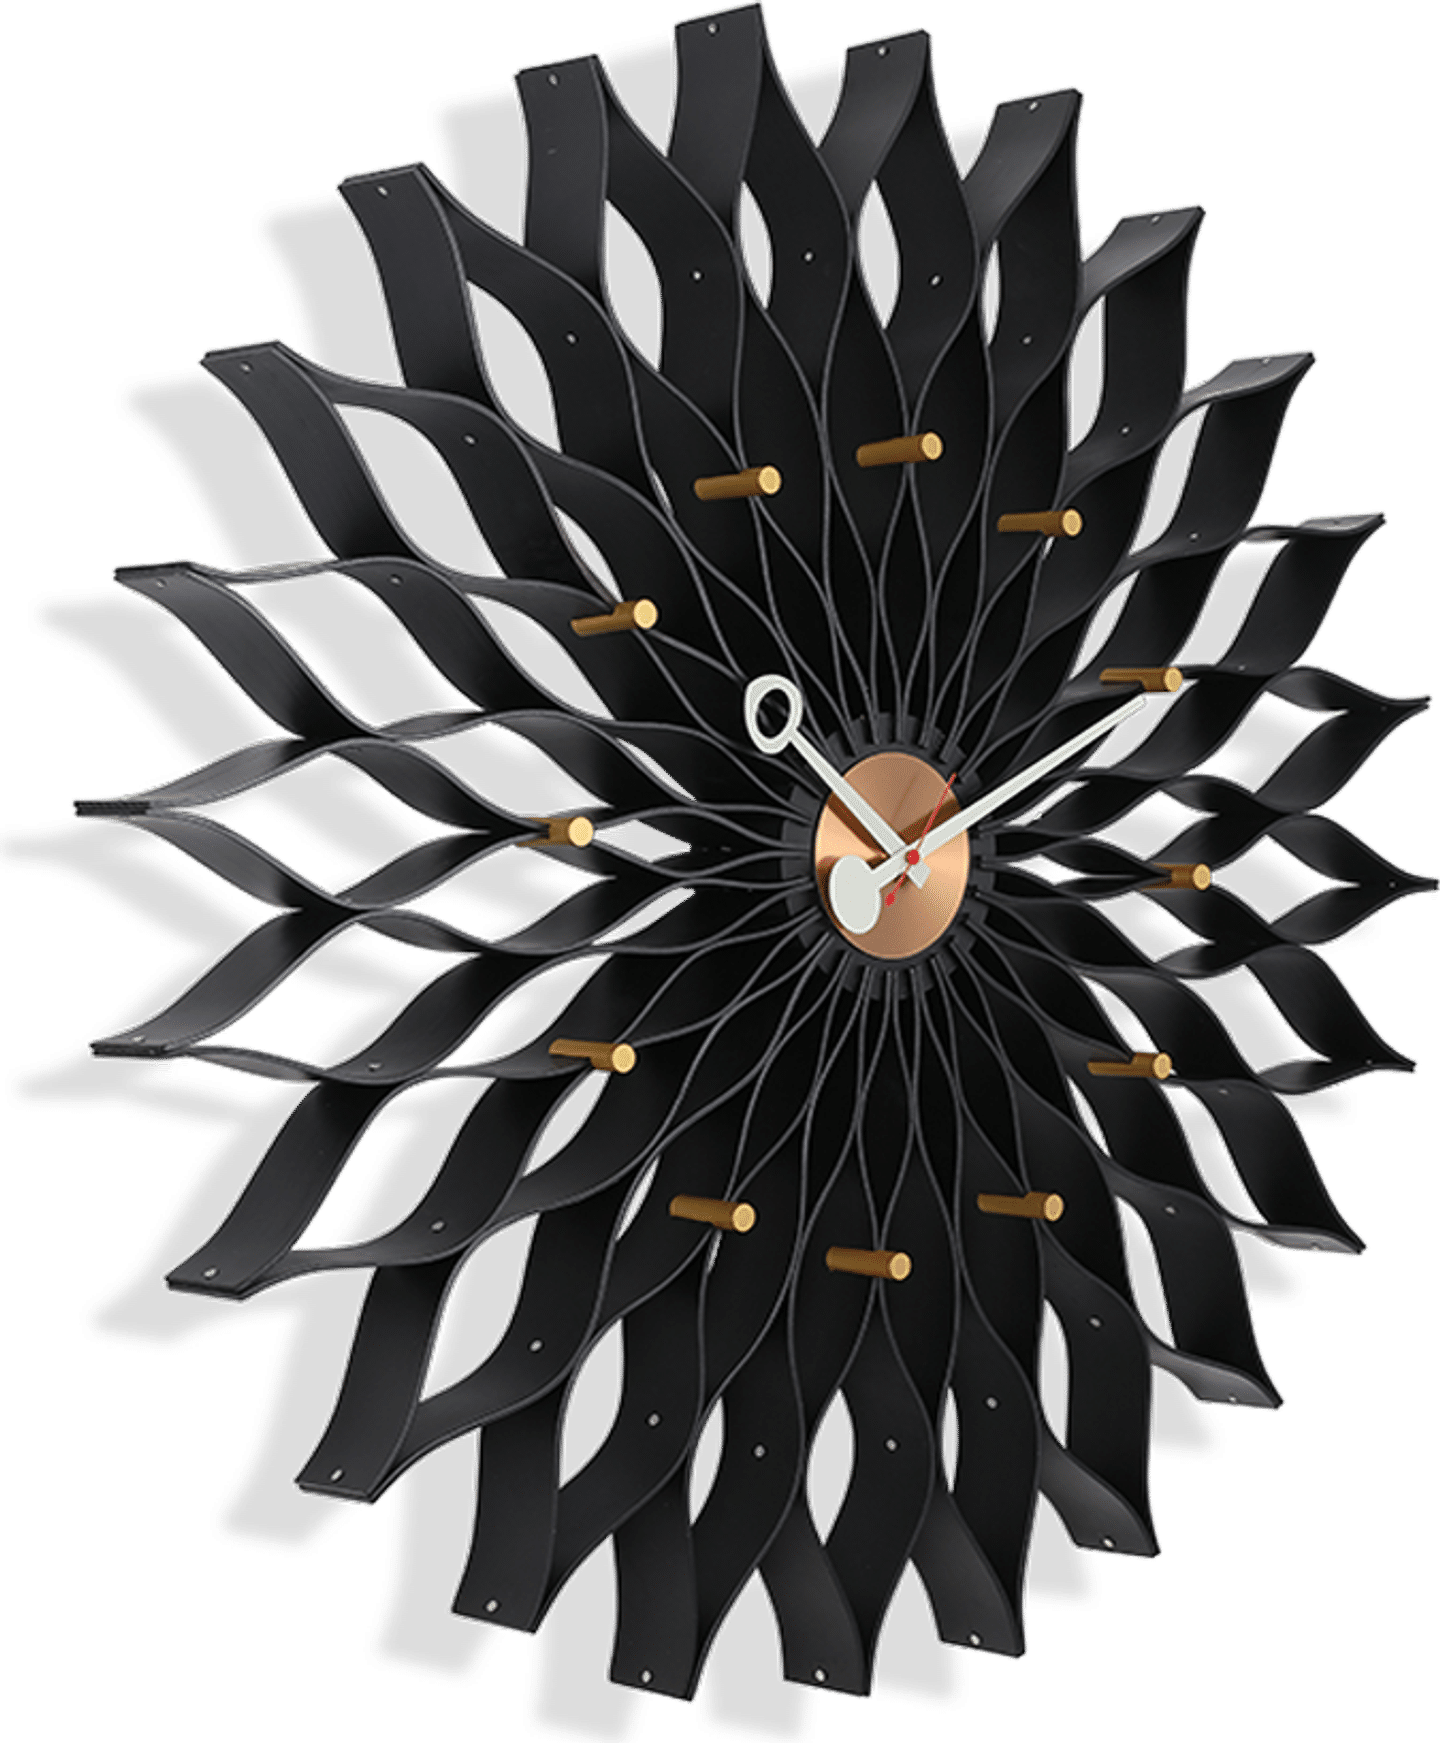 Orologio da parete in stile girasole Black image.